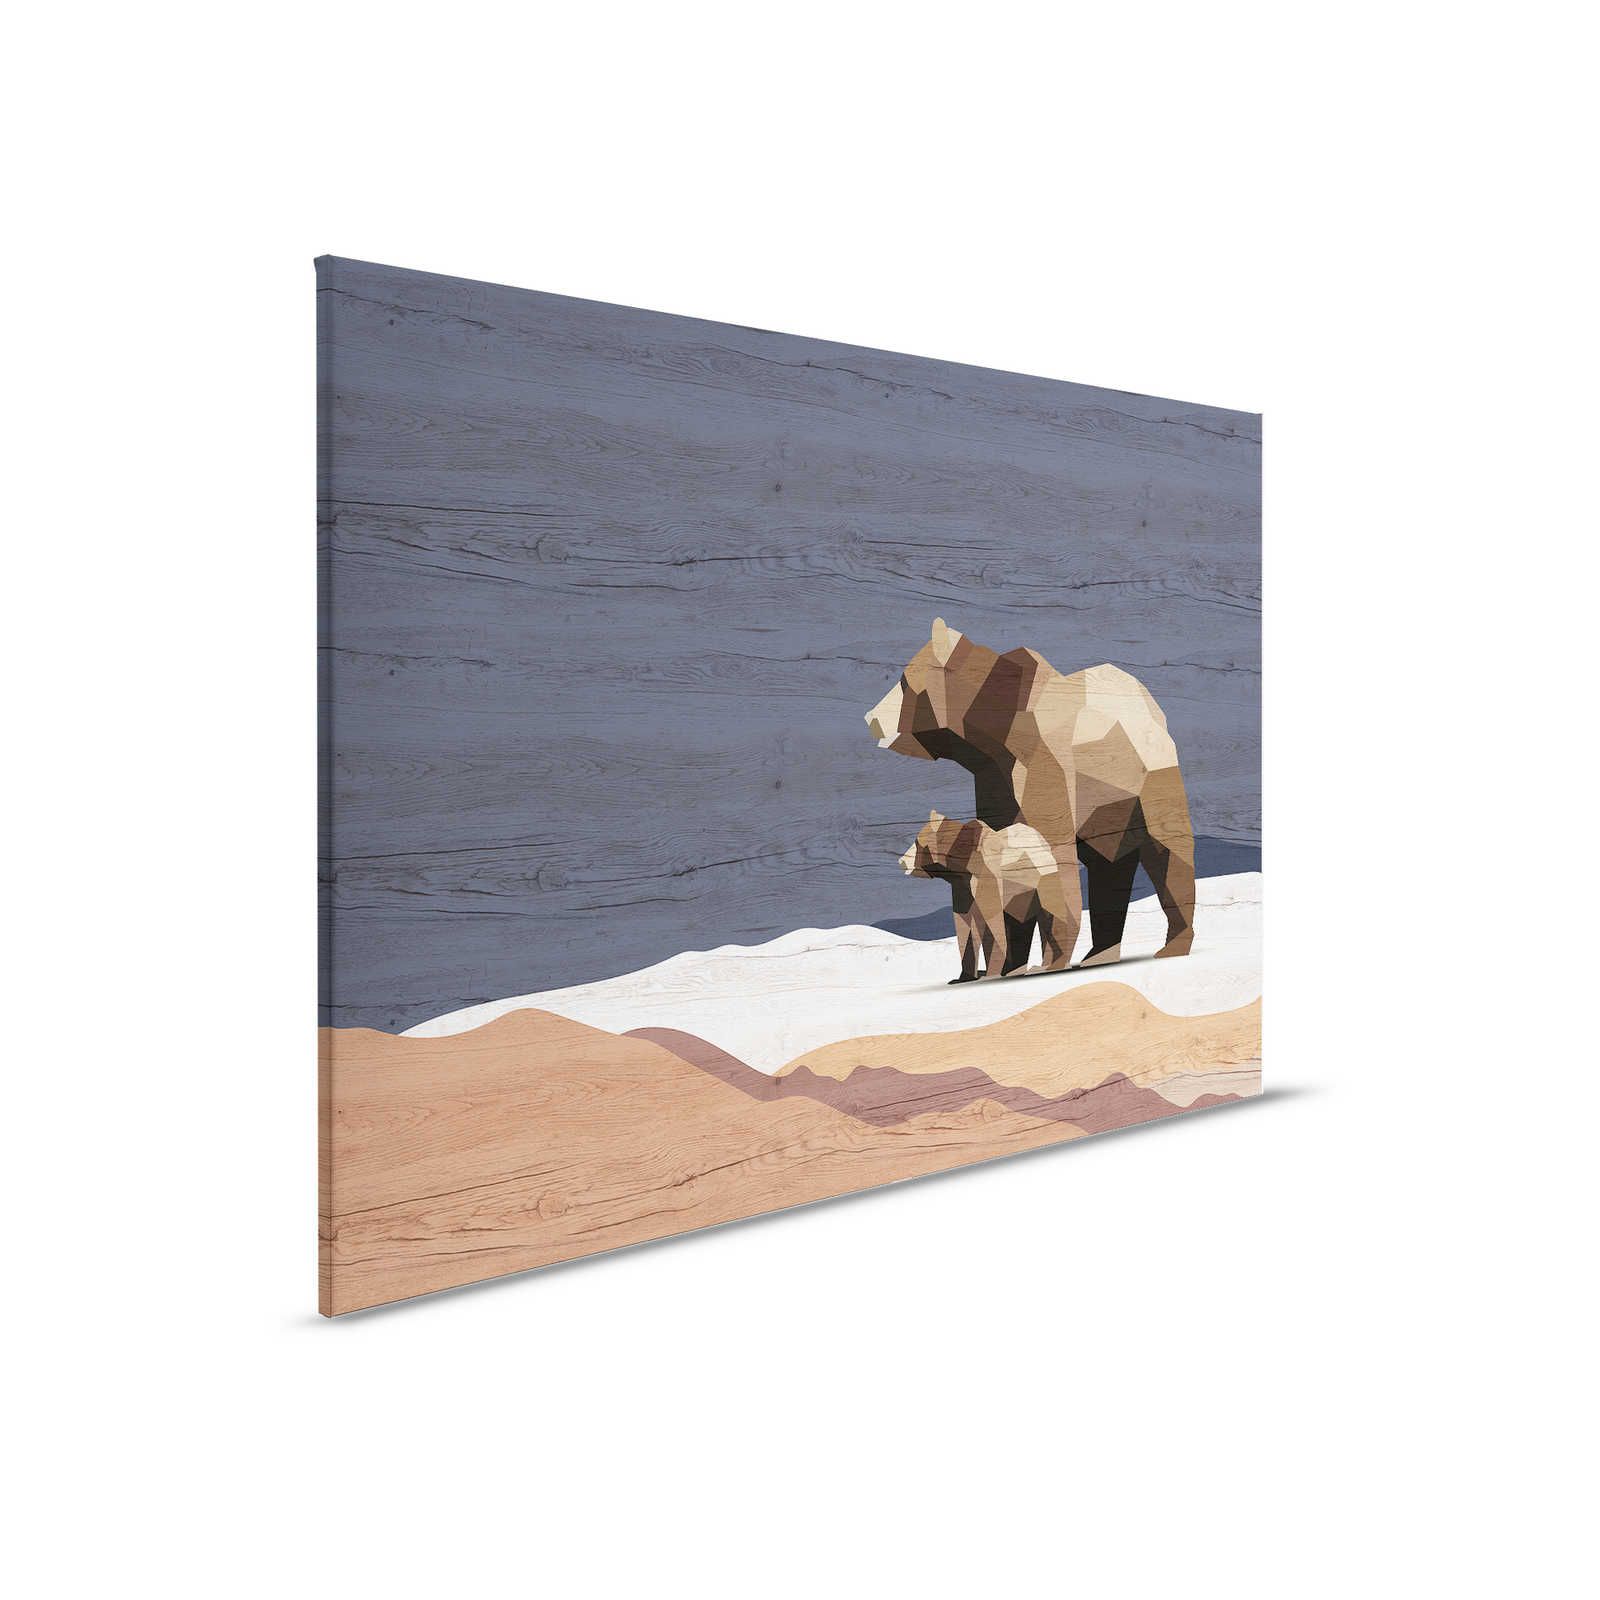 Yukon 3 - Toile Famille d'ours à facettes & aspect bois - 0,90 m x 0,60 m
